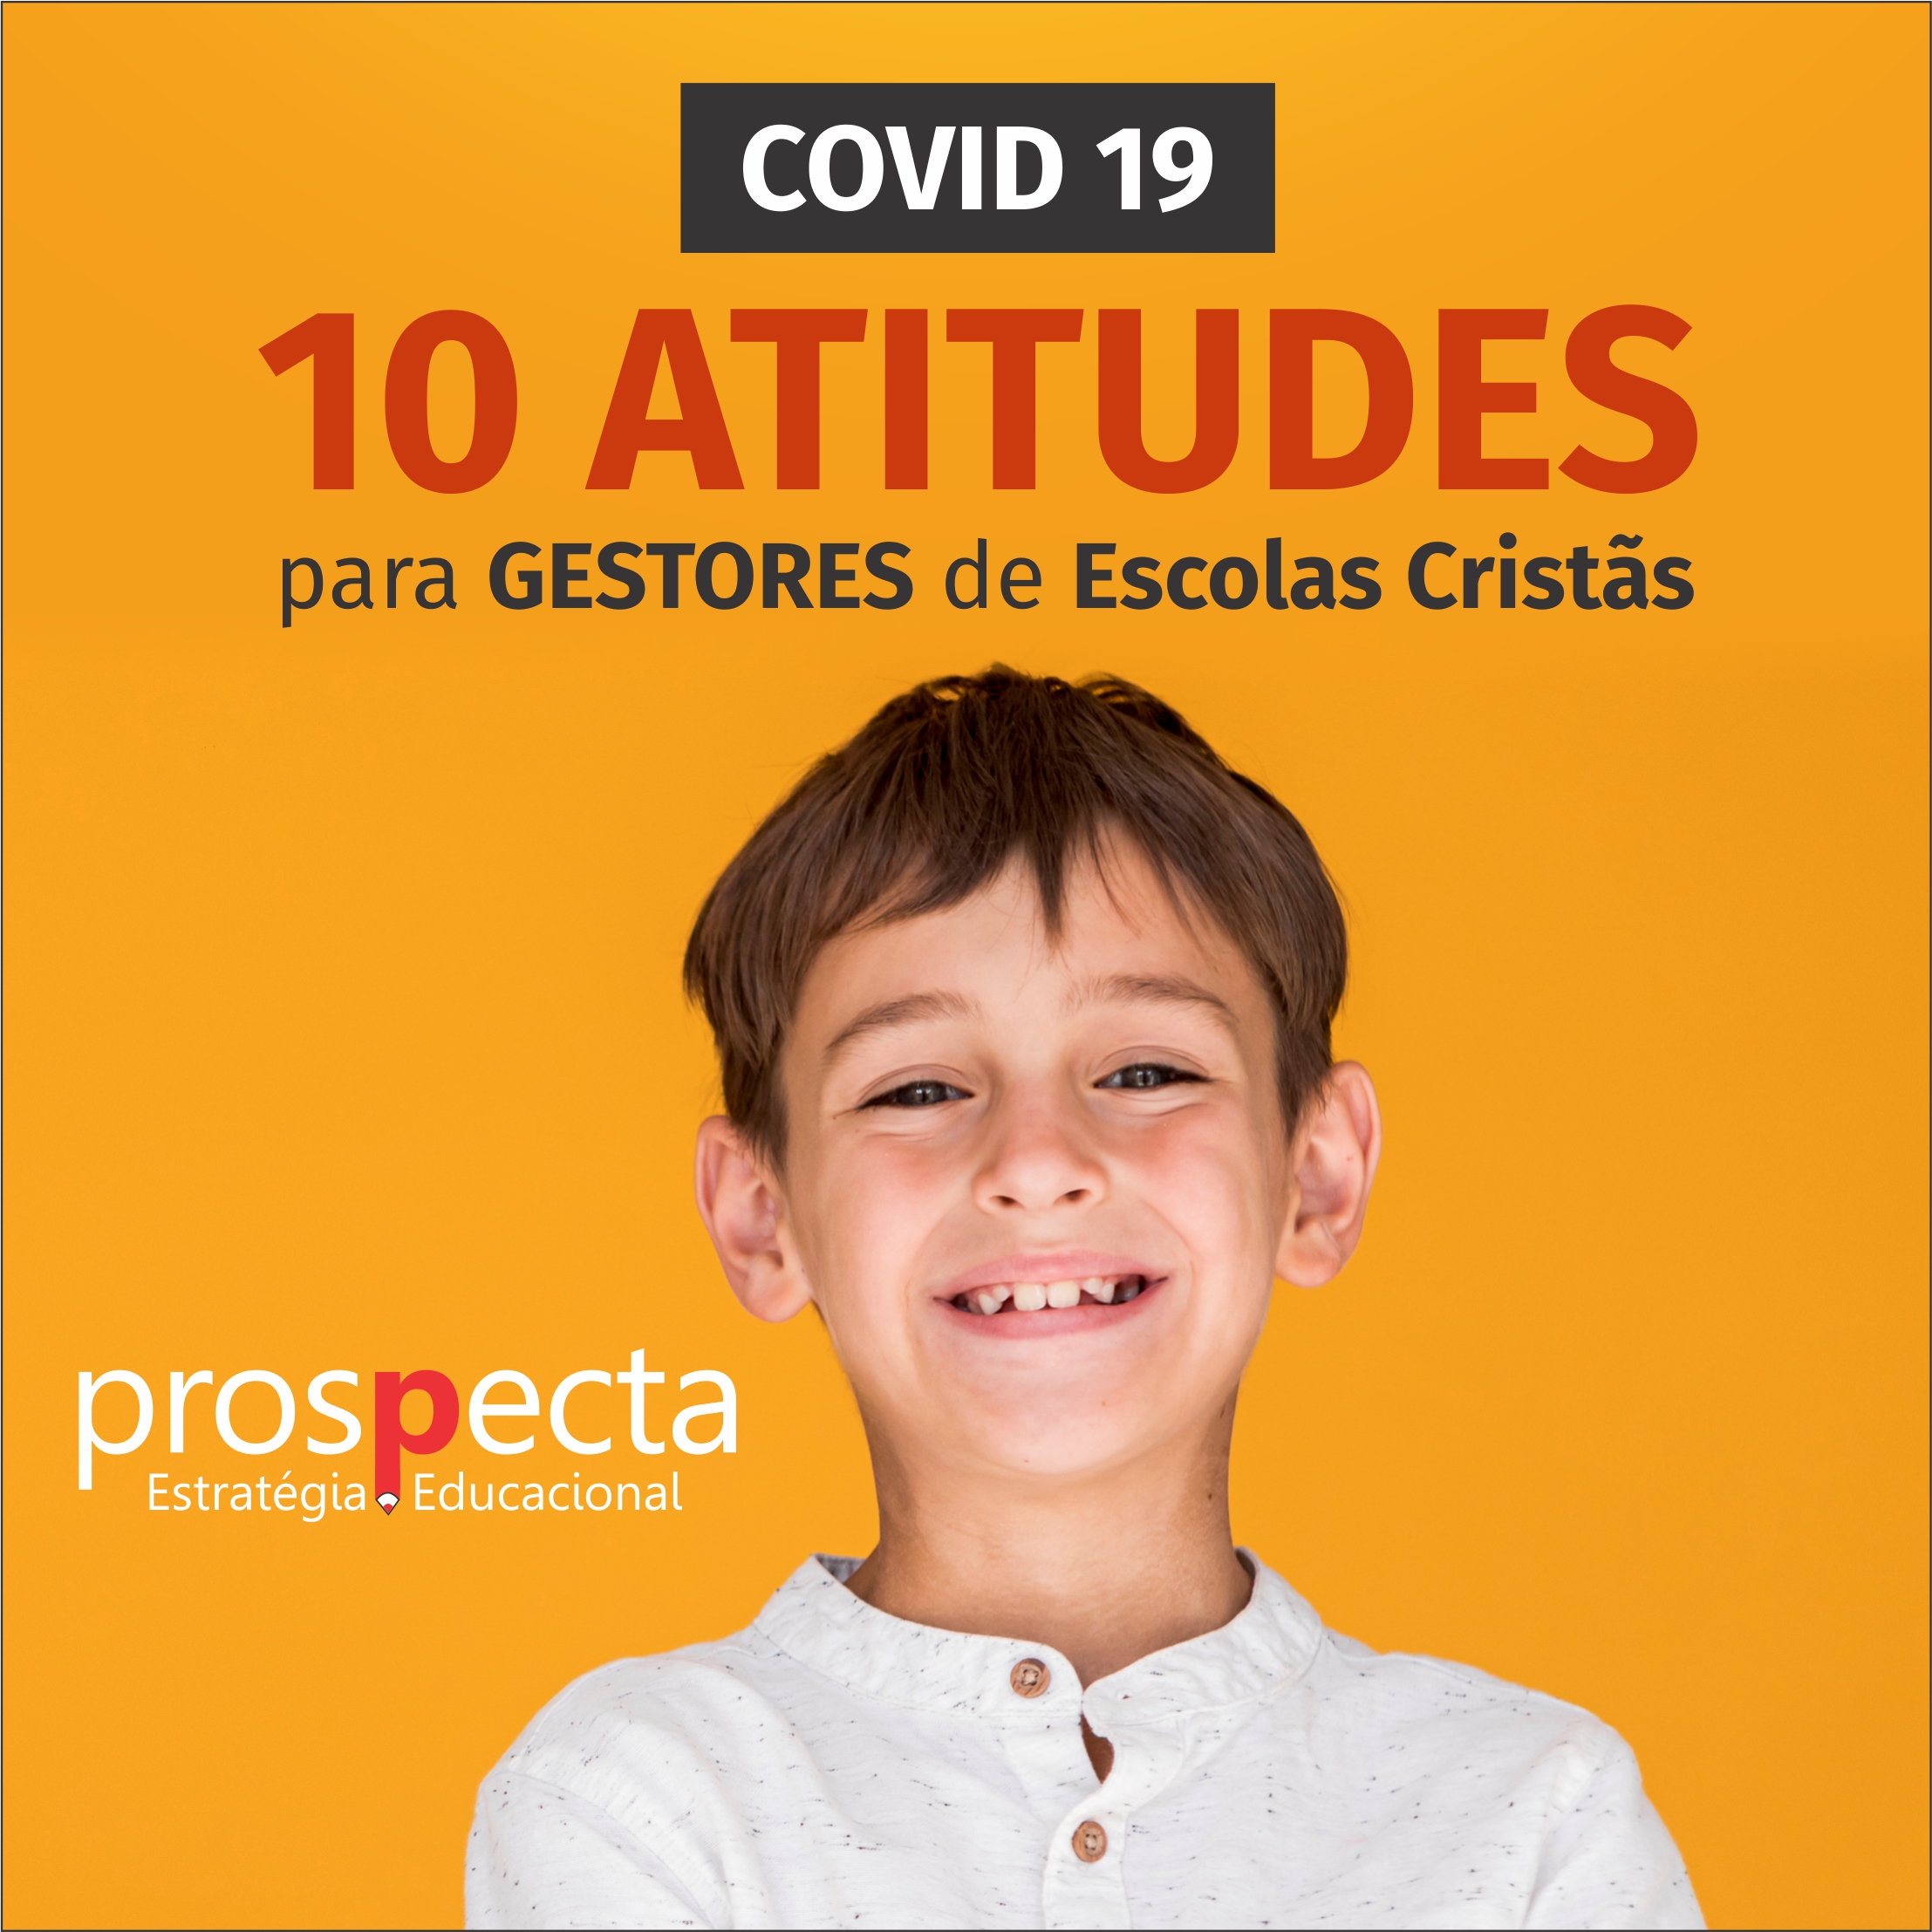 10 Atitudes para Gestores de Escolas Cristãs em tempos de COVID 19